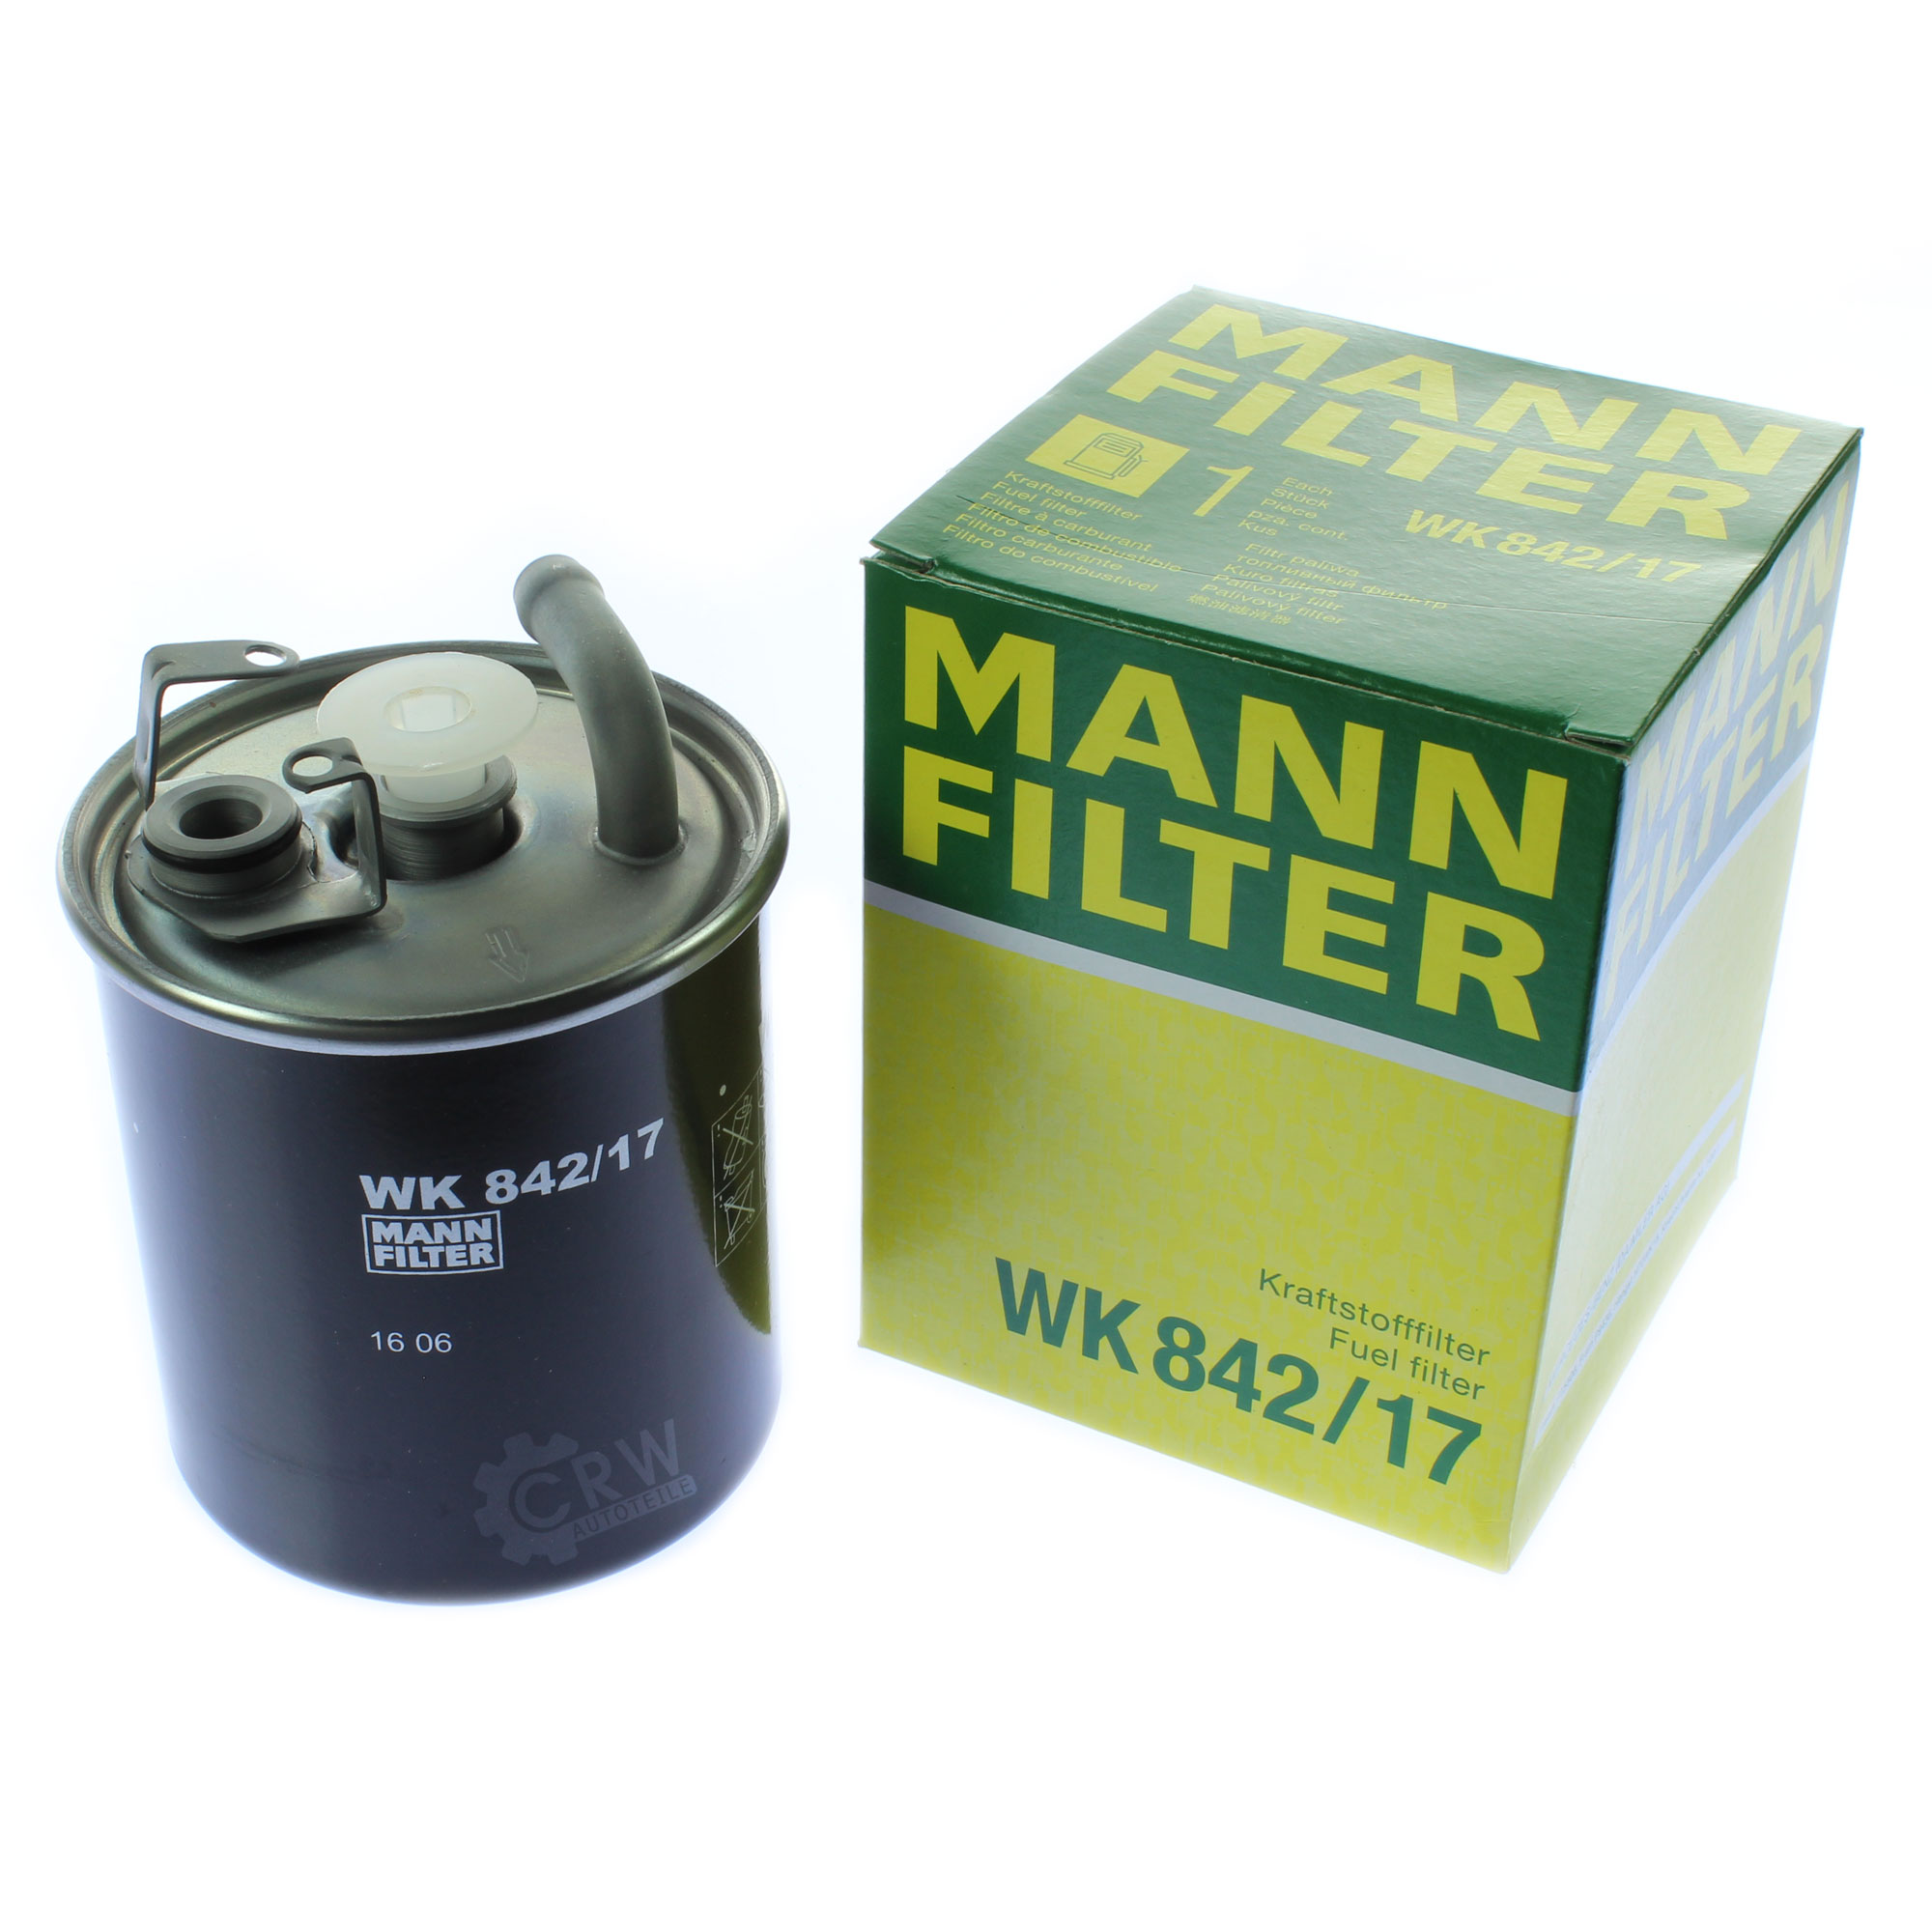 MANN-FILTER Kraftstofffilter WK 842/17 Fuel Filter